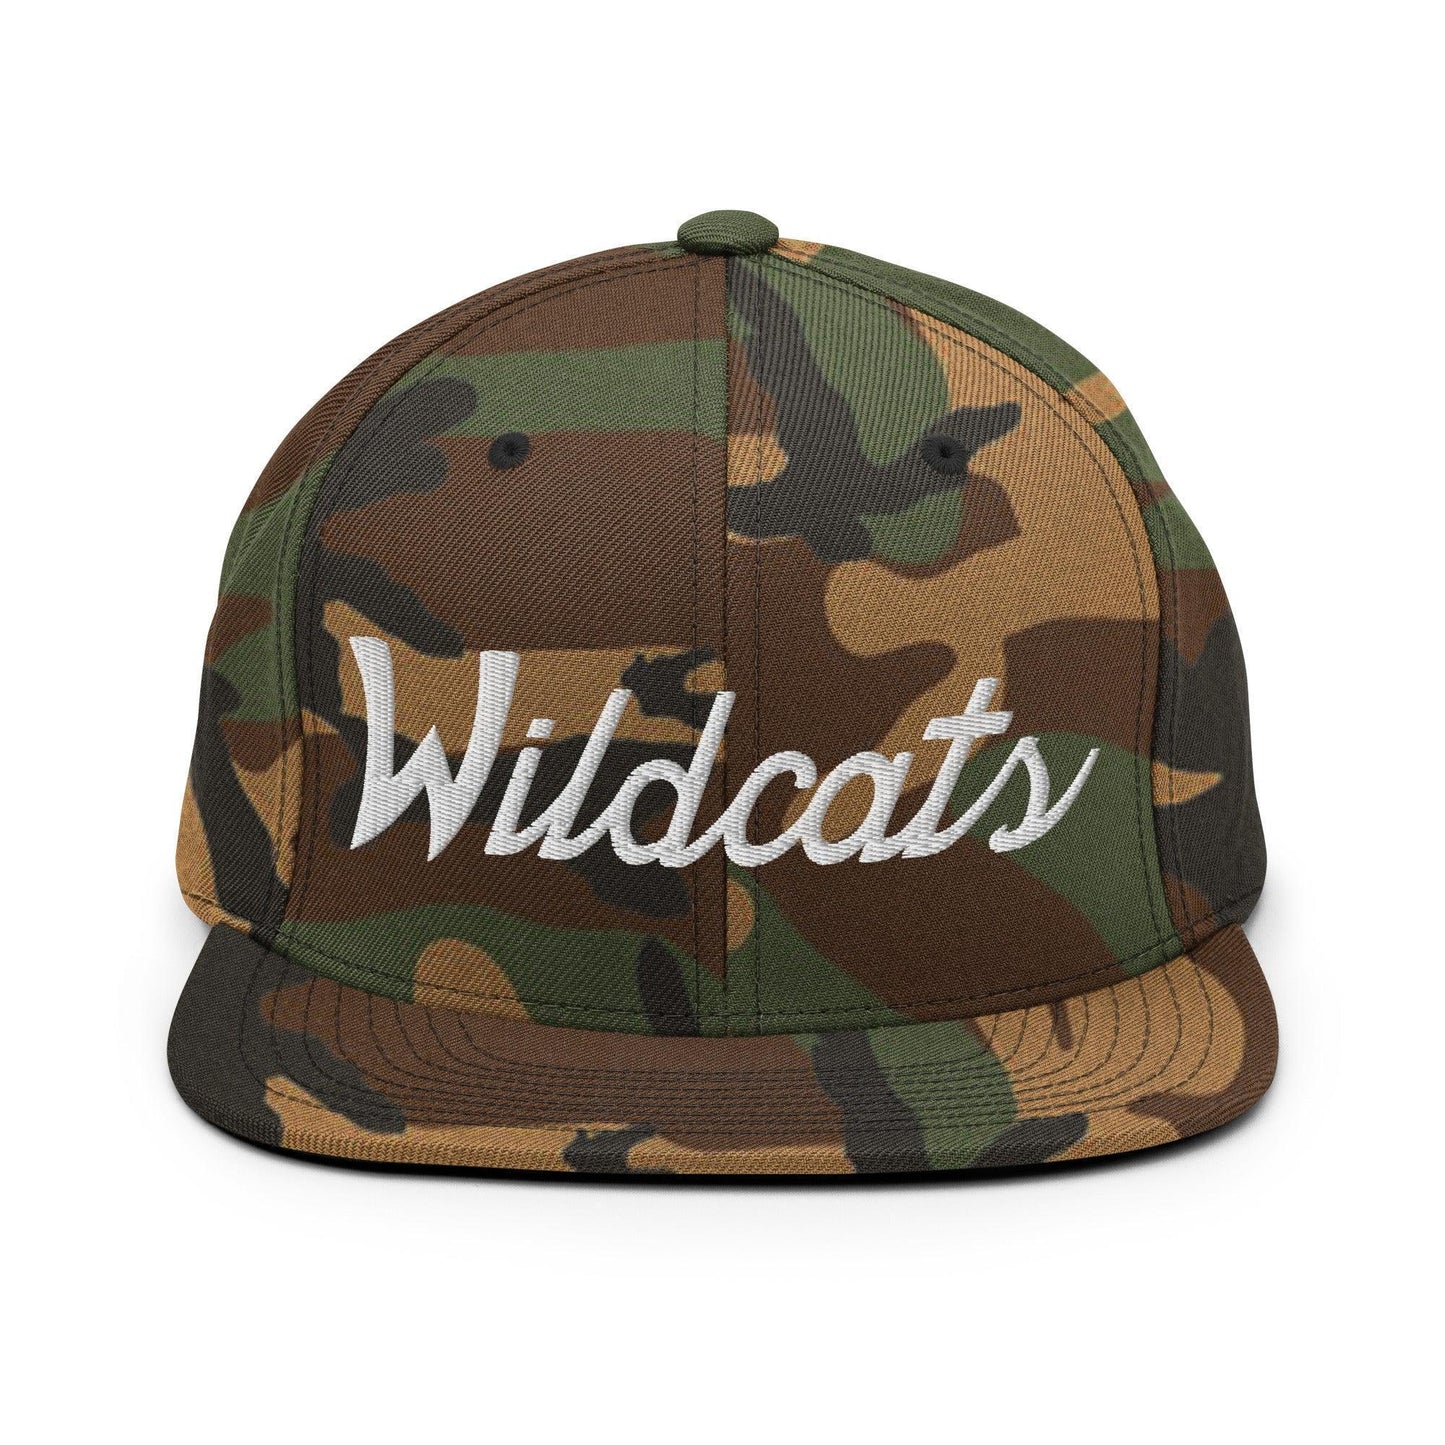 Wildcats School Mascot Script Snapback Hat Green Camo